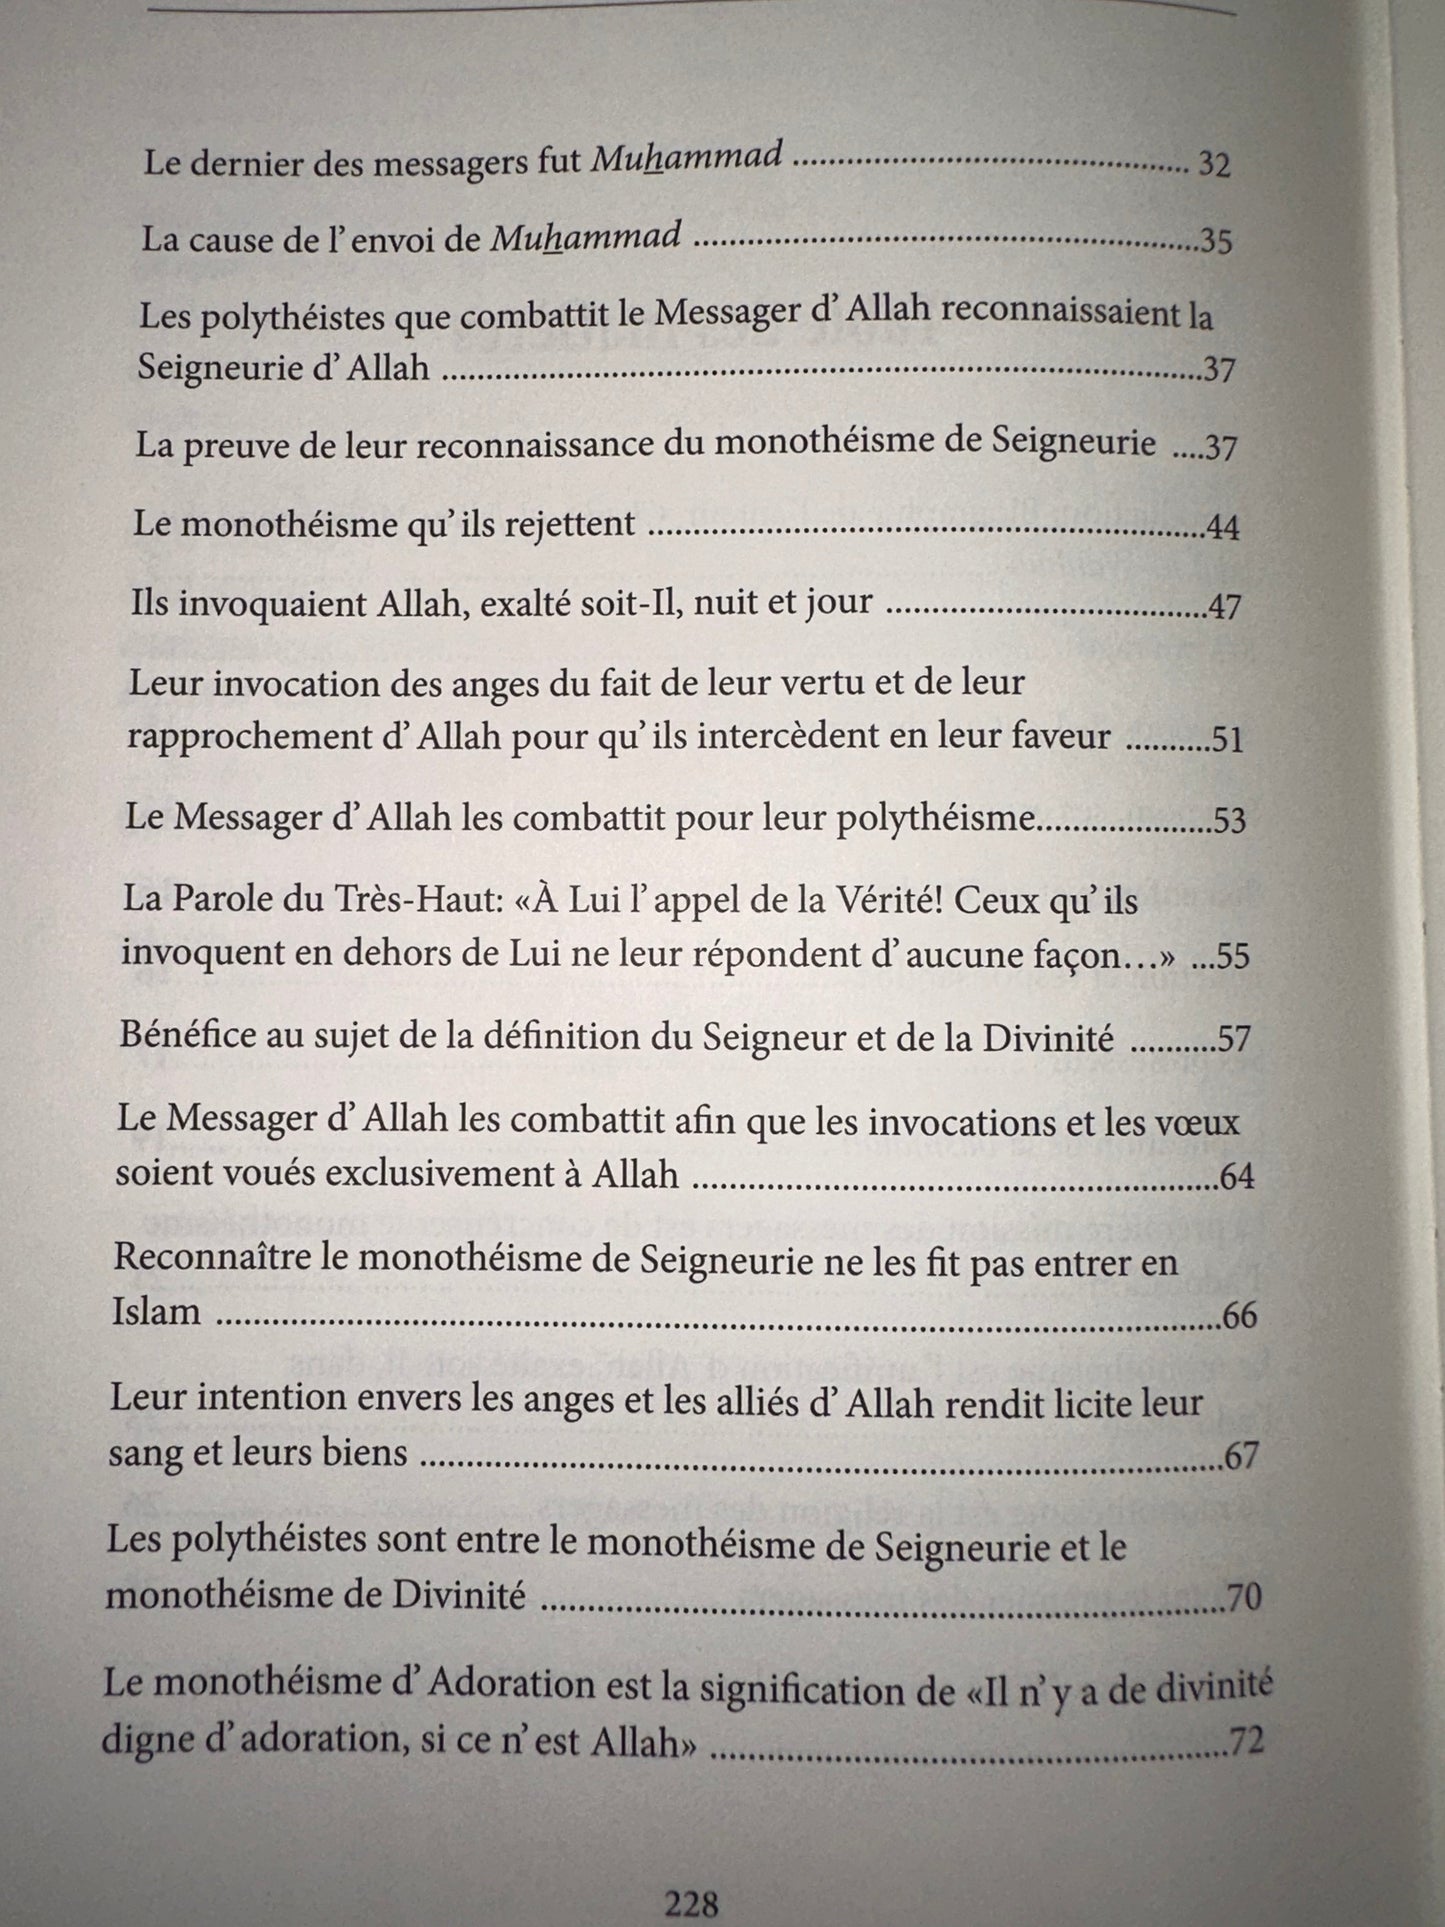 Commentaire de l'épître LA DISSIPATION DES AMBIGUÏTÉS (Kachf ach-Chubuhât) de Muhammad Ibn Abd Al Wahhab, par Sâlih Ibn Fawzân